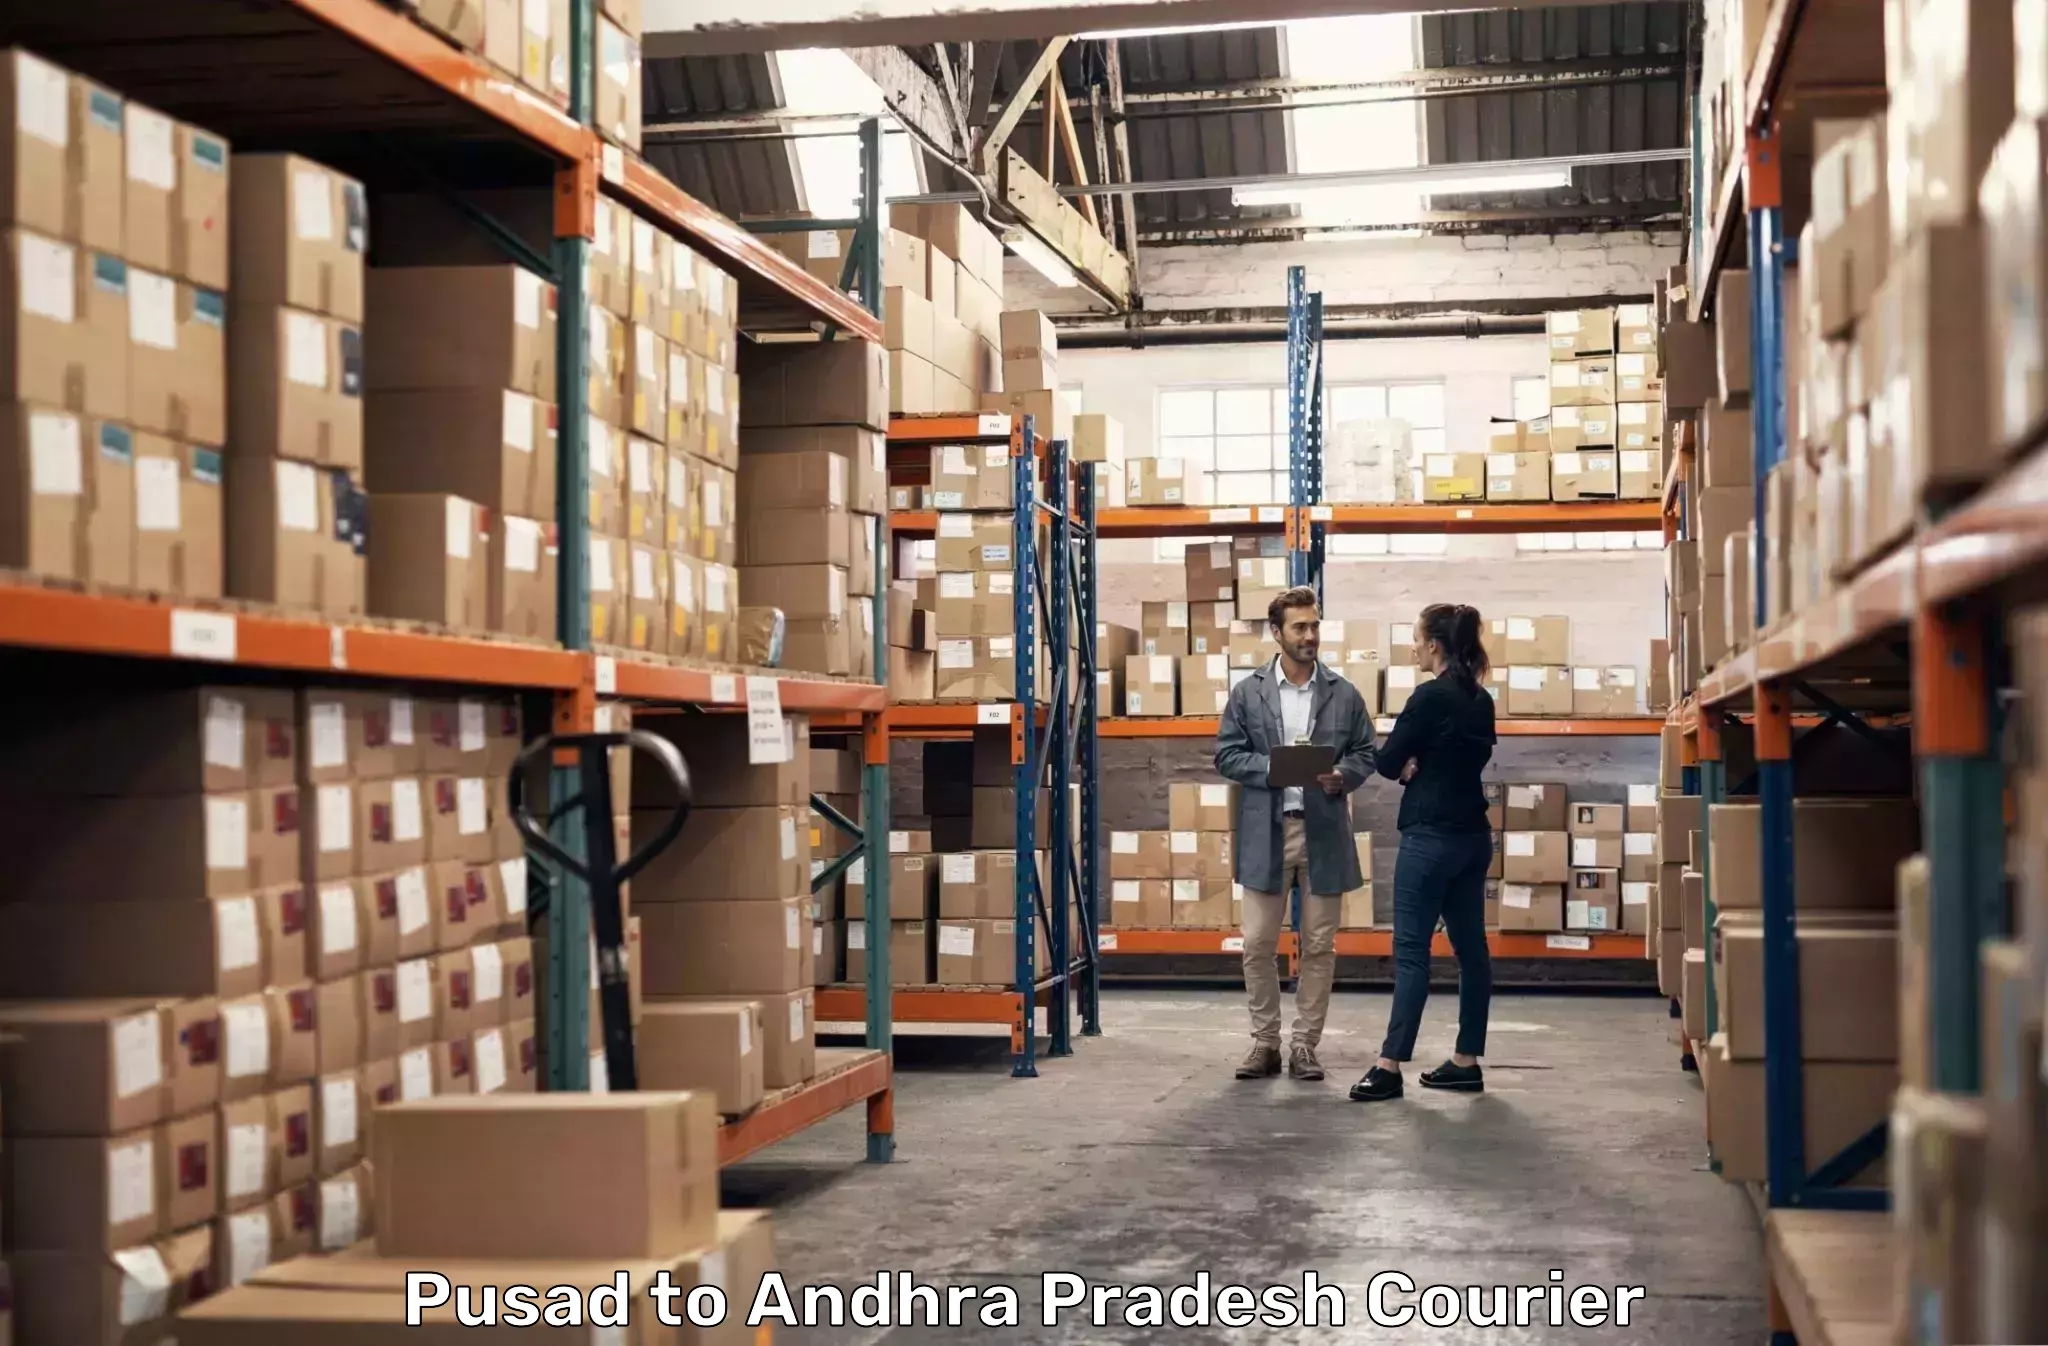 Reliable parcel services Pusad to Vidyanagar Nellore